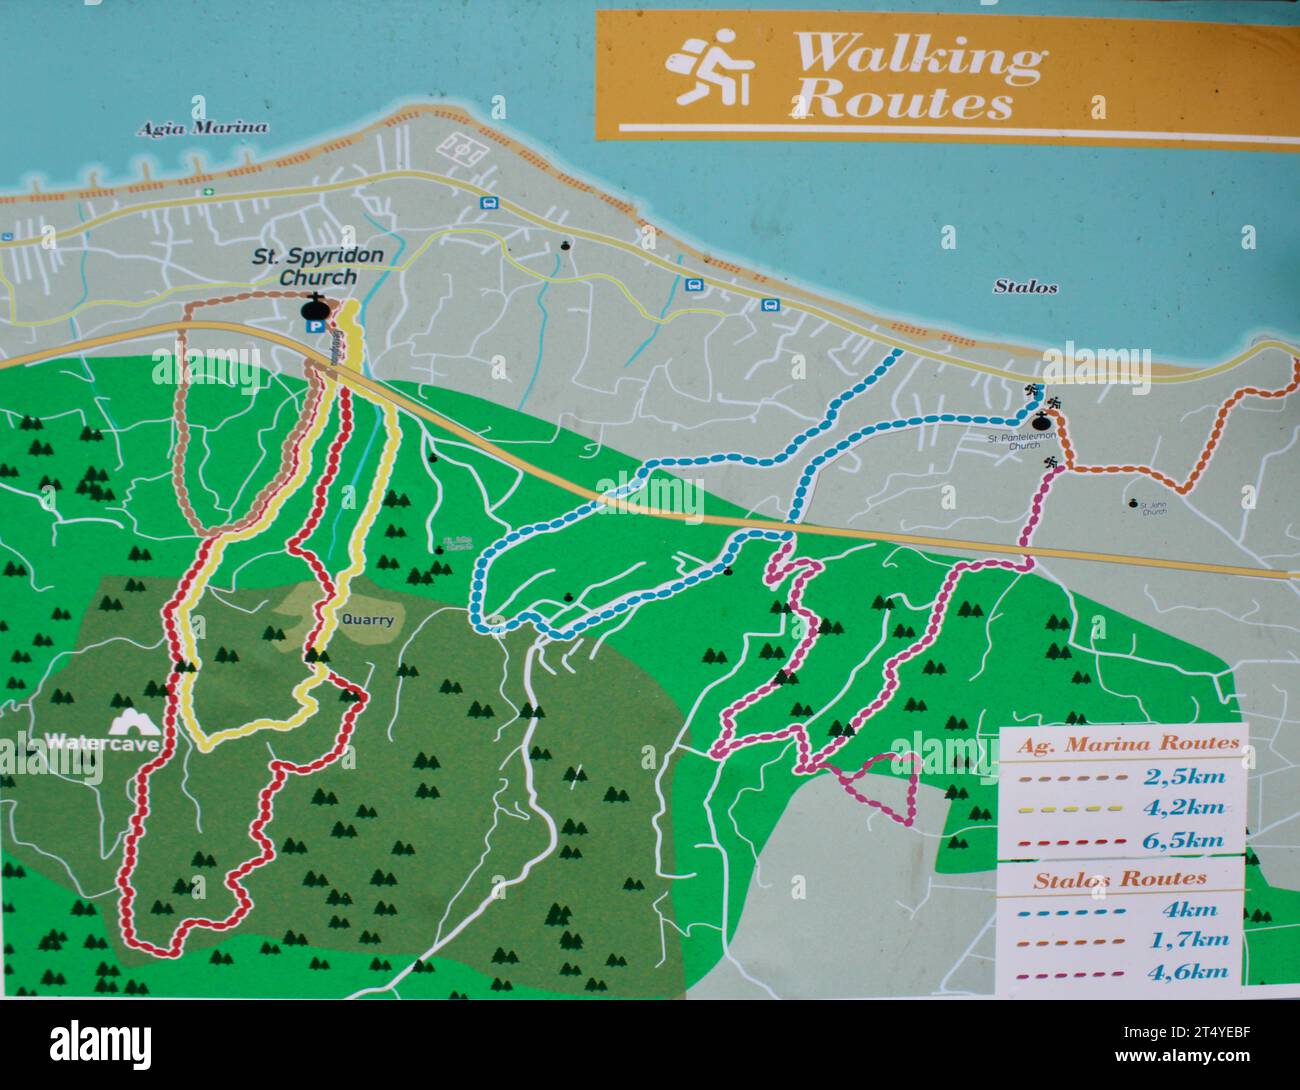 Wandern auf Kreta - Routenplan für Spaziergänge rund um Agia Marina, Chania, Kreta. Informationstafel in der Nähe des Ausgangspunkt für Spaziergänge in der Nähe der Spyridon-Kirche. Stockfoto